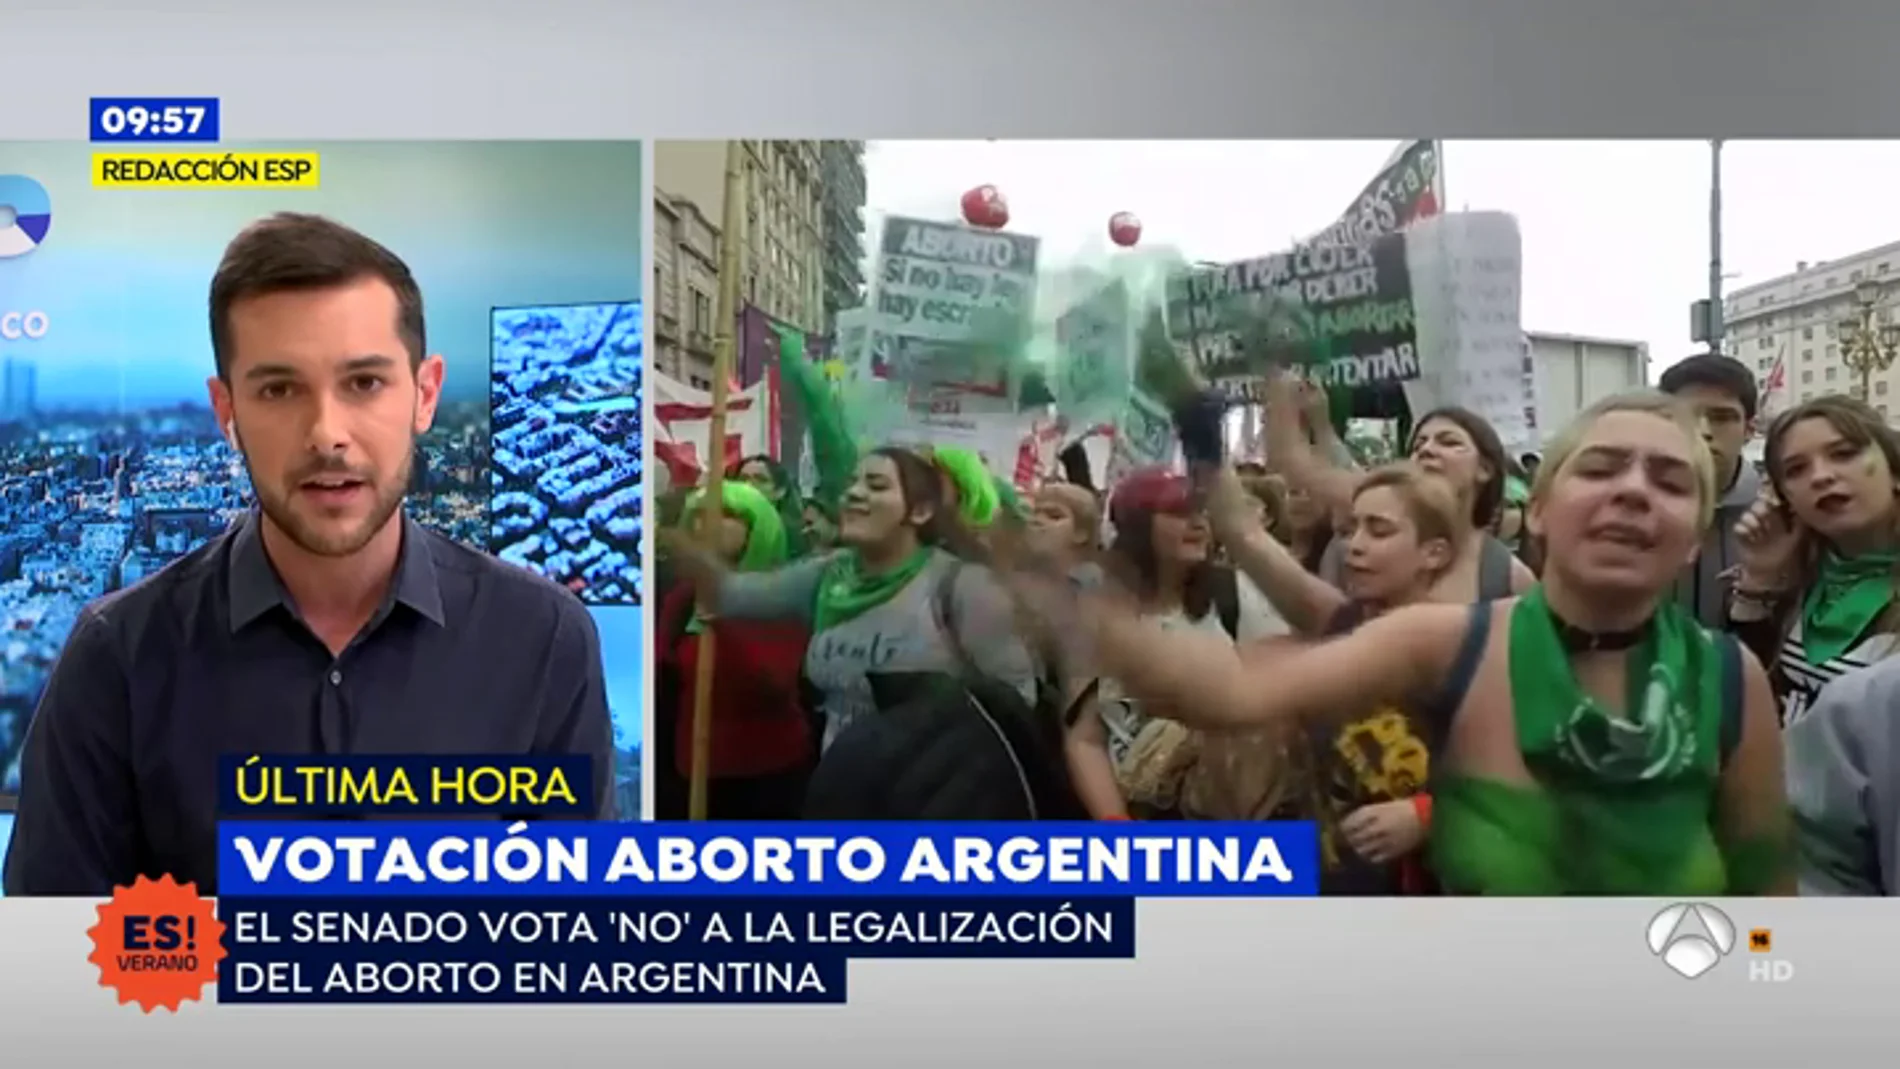 El senado rechaza legalizar el aborto en argentina